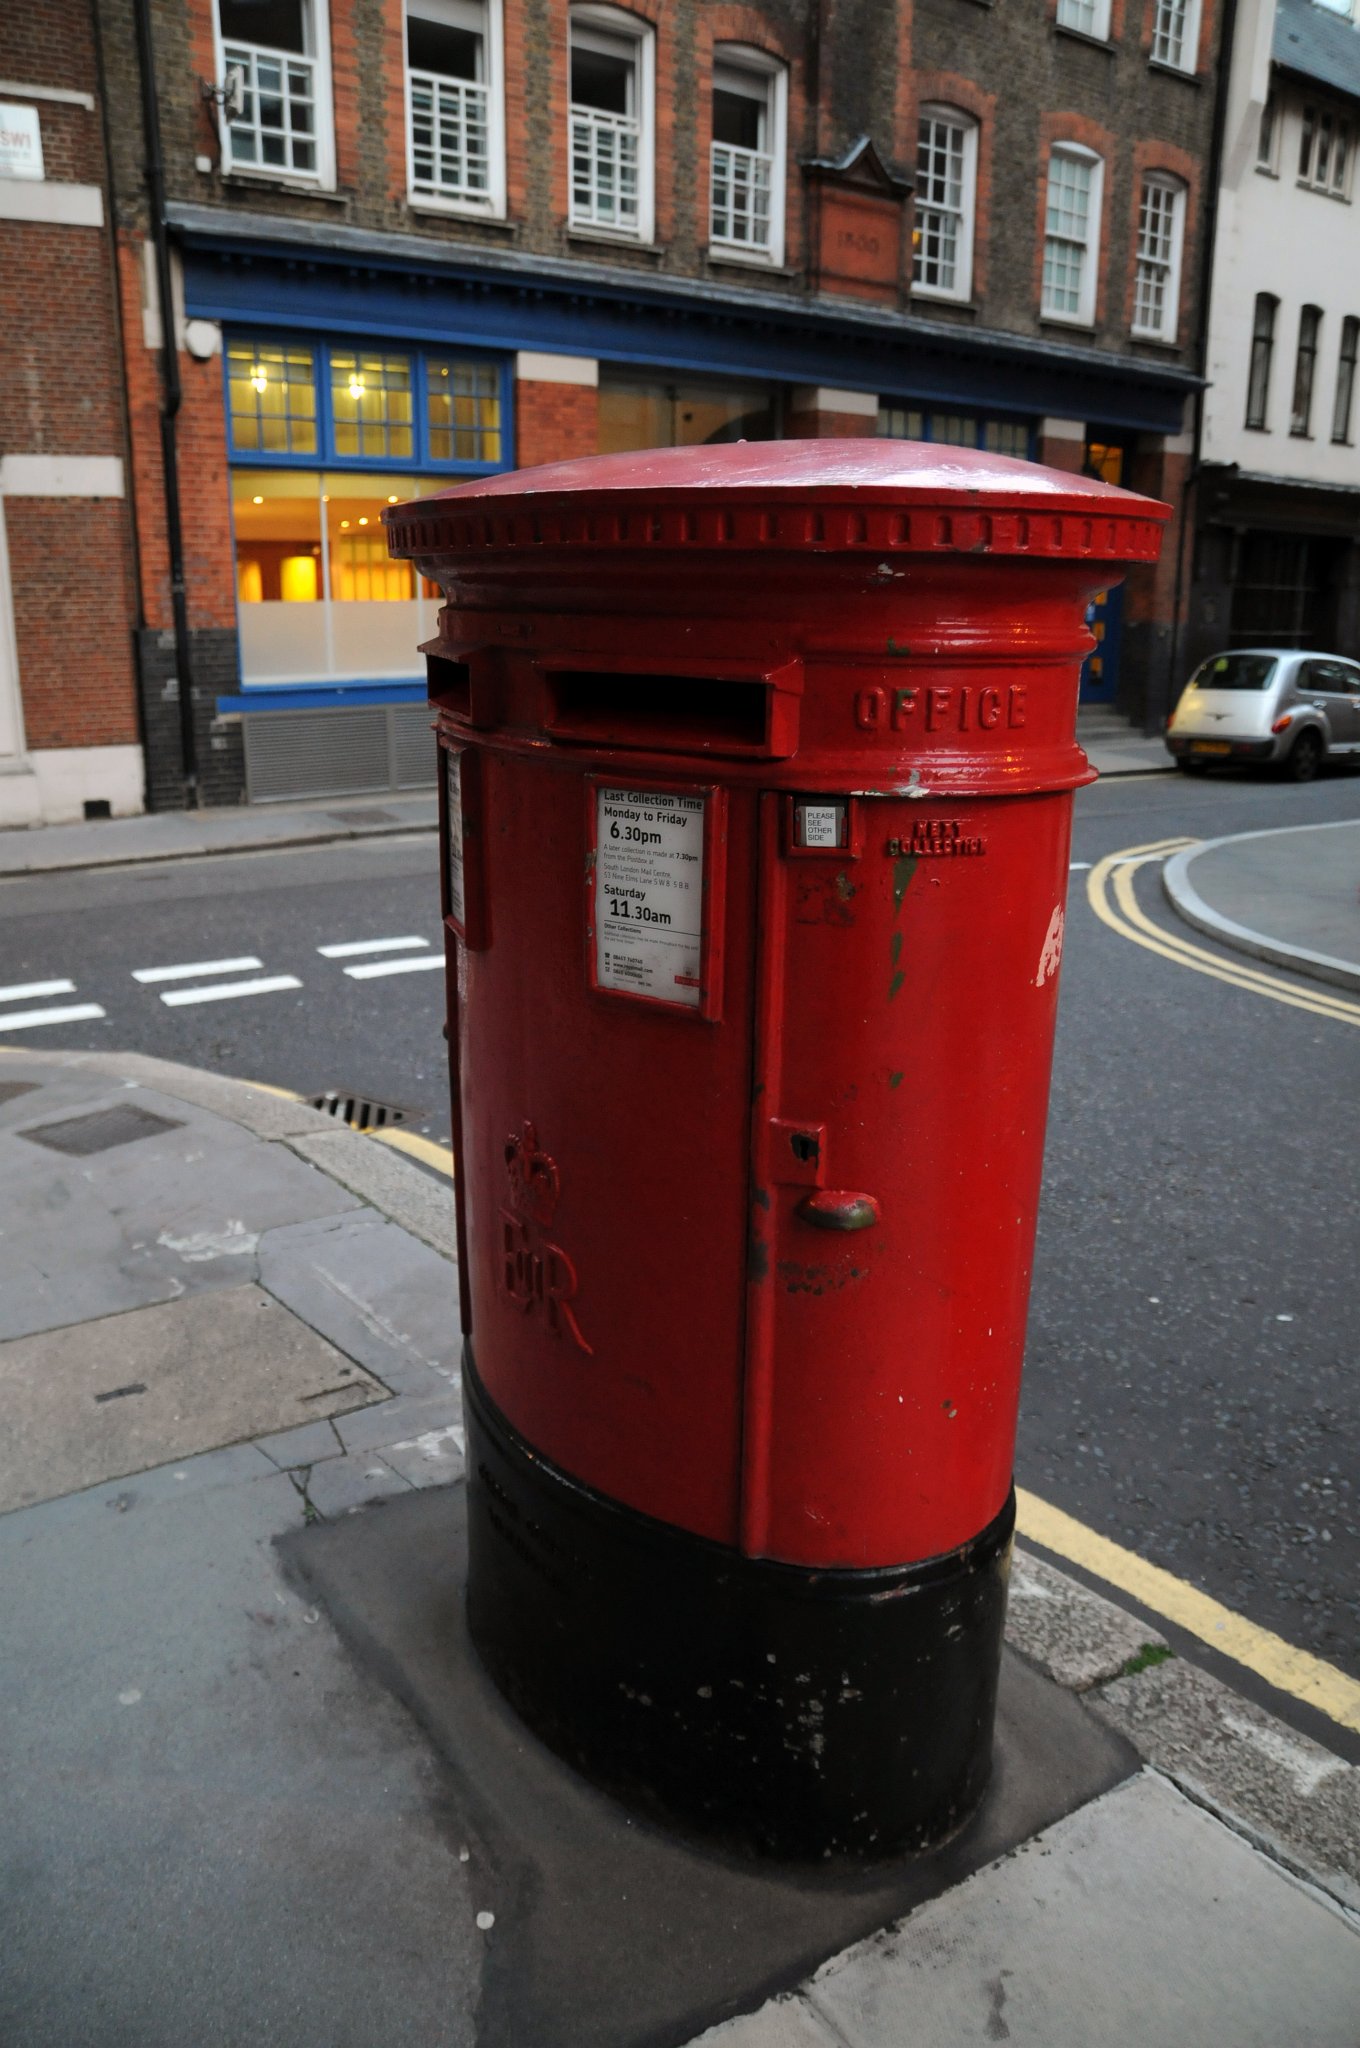 DSC_3465_1.jpg - Tradiční snad až ikonická poštovní schránka v Londýně. Schránky jsou červené od roku 1874, kdy vládla královna Viktorie. První poštovní schránky se v londýnských ulicích objevily v roce 1855. Byly umístěny na Fleet Street, Strandu, Pall Mall a Rutland Gate. Žádná z nich se nezachovala. Nejstarší schránky, které můžeme v britské metropoli najít, jsou z roku 1872. O dva roky později dostaly svou typickou červenou barvu, kterou září dodnes. Původně však byly natřeny na zeleno. Na každé britské poštovní schránce jsou iniciály panovníka, za jehož panování byla vyrobena, tedy královnou Viktorií počínaje a Alžbětou II. konče. Díky těmto litinovým boxům se alespoň něco málo uchovalo i z vlády Edwarda VIII., který abdikoval v roce 1936, ještě před svou korunovací. V Londýně je v současnosti osm velkých sloupových schránek s jeho monogramem.